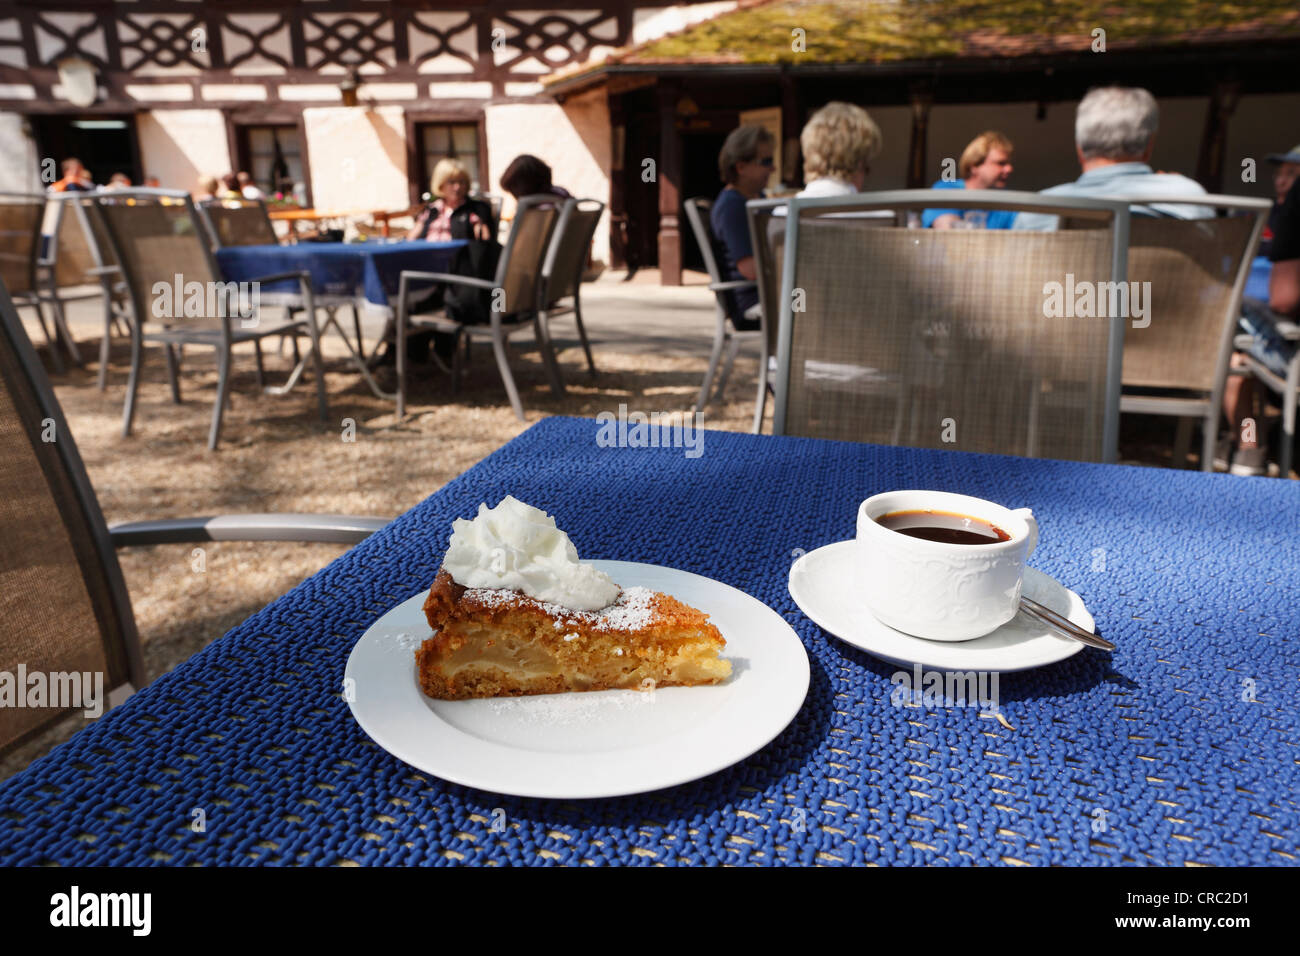 Apfelkuchen à La Ringburg Cafè — Rezepte Suchen